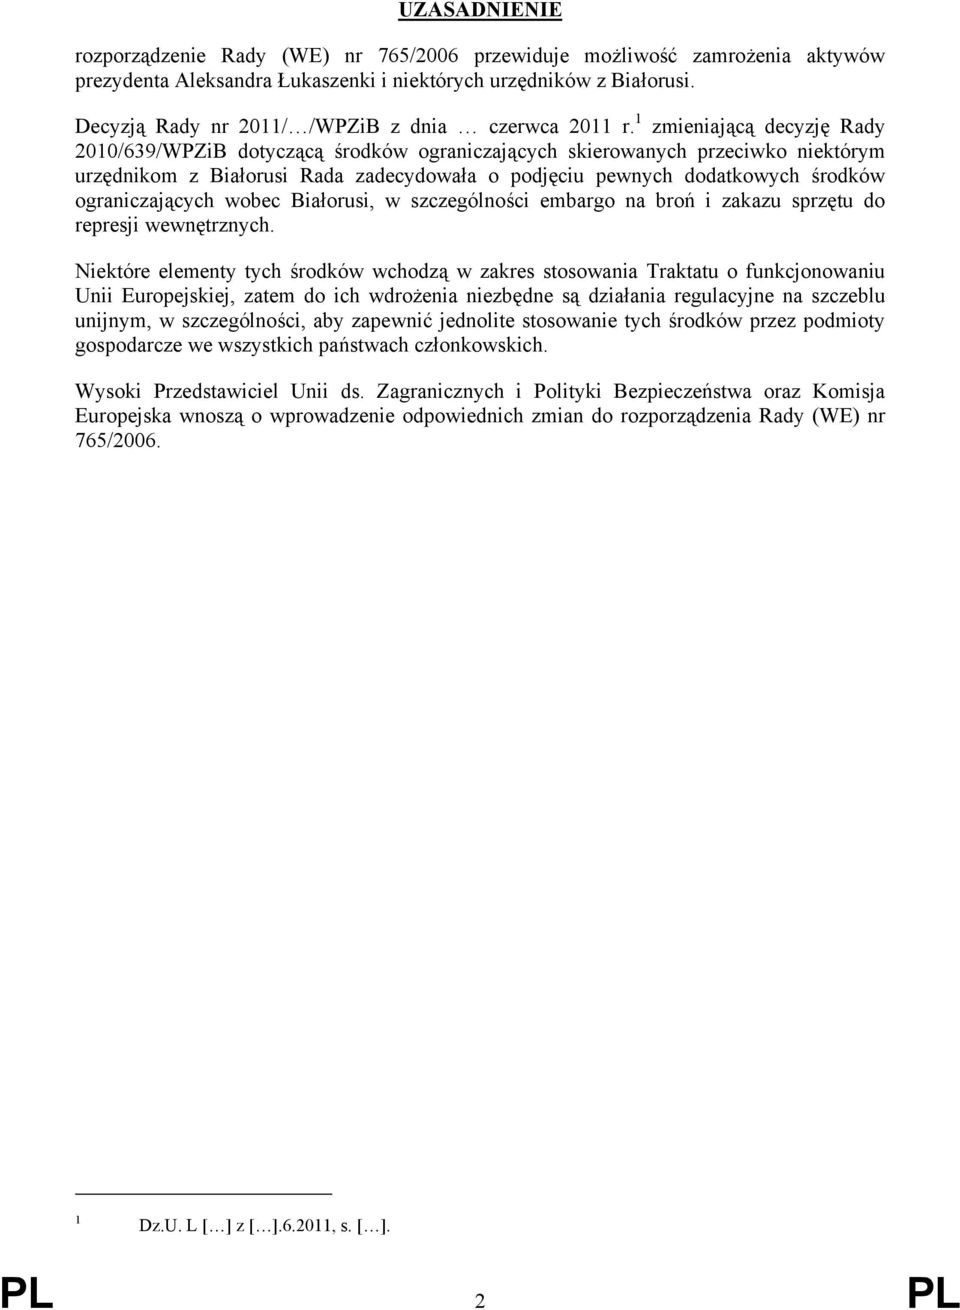 1 zmieniającą decyzję Rady 2010/639/WPZiB dotyczącą środków ograniczających skierowanych przeciwko niektórym urzędnikom z Białorusi Rada zadecydowała o podjęciu pewnych dodatkowych środków